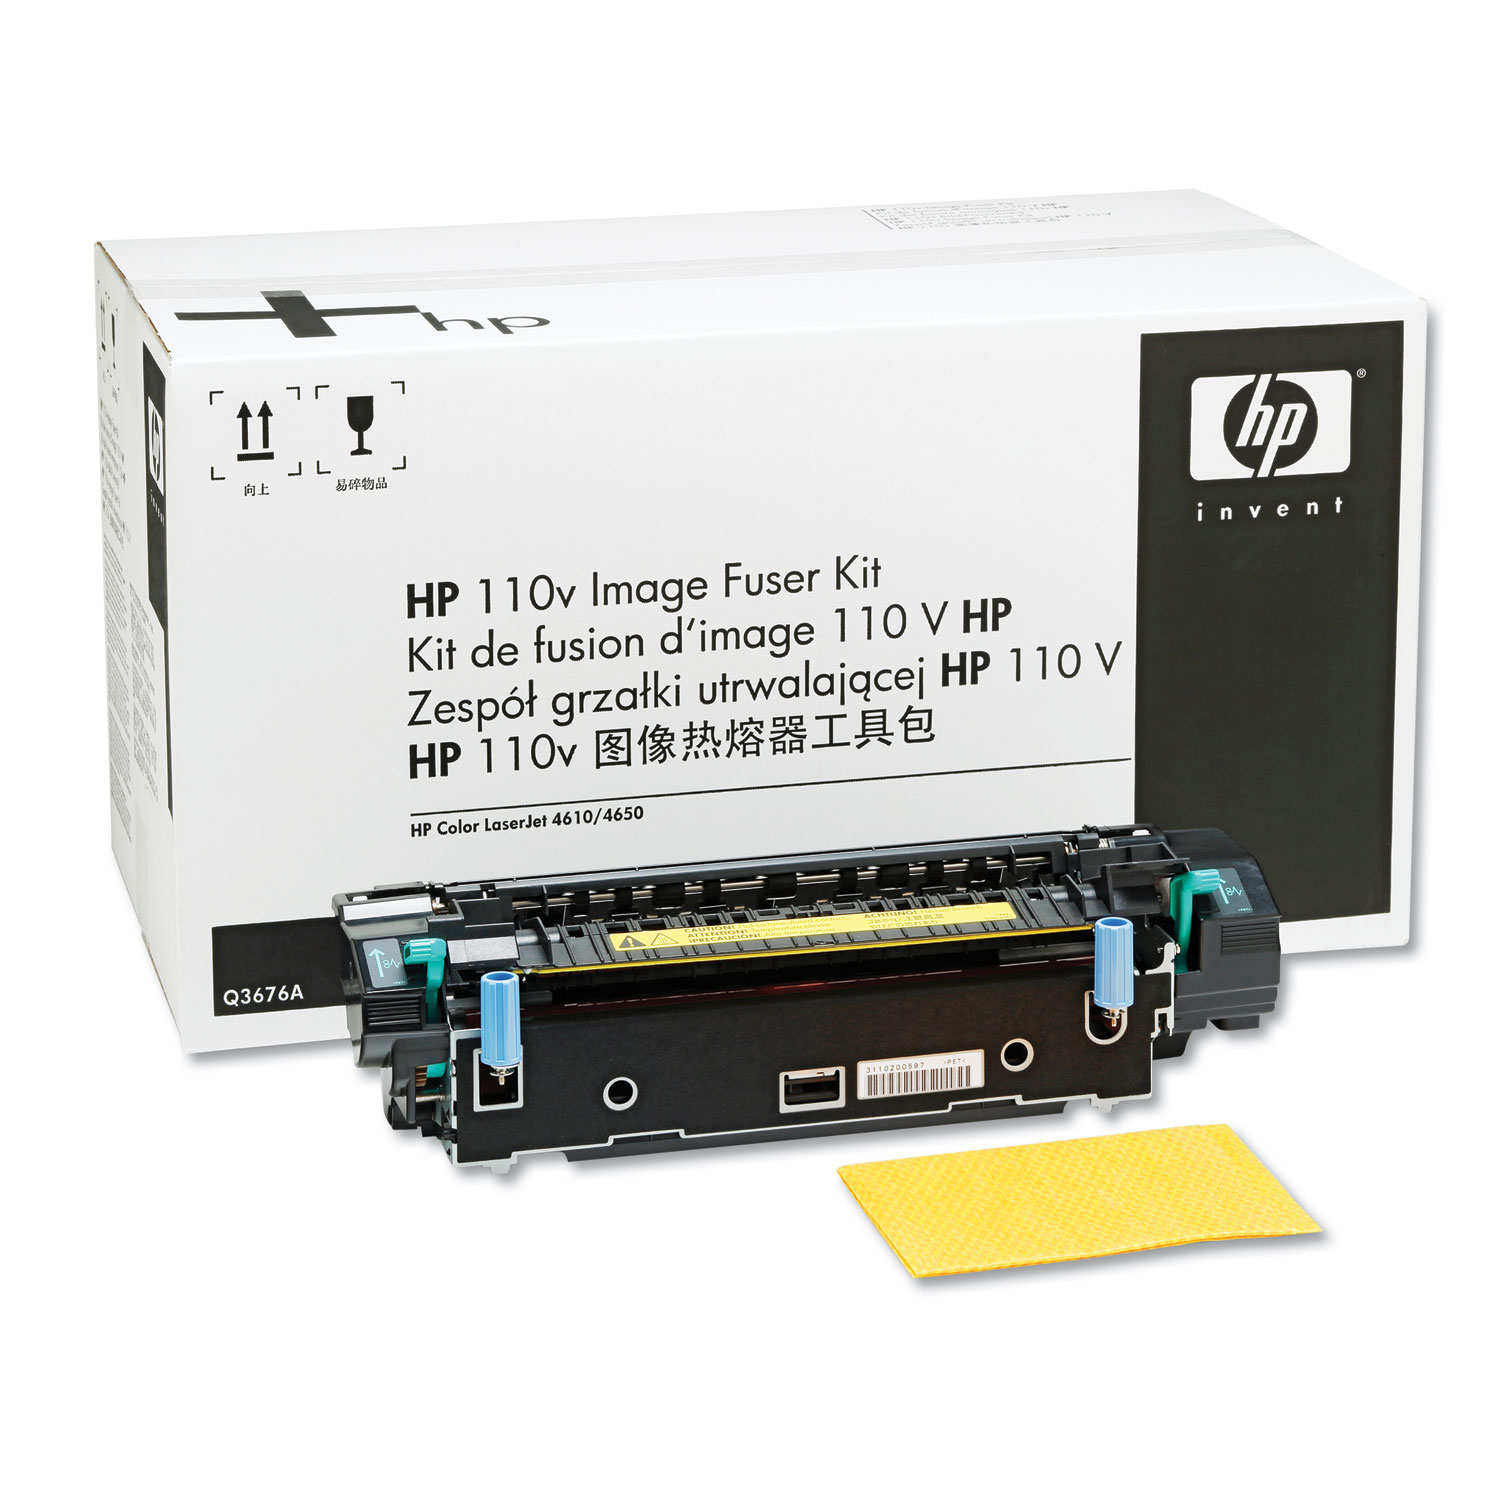  HP Q3676A Q3676A 110V Image Fuser Kit (HEWQ3676A) 